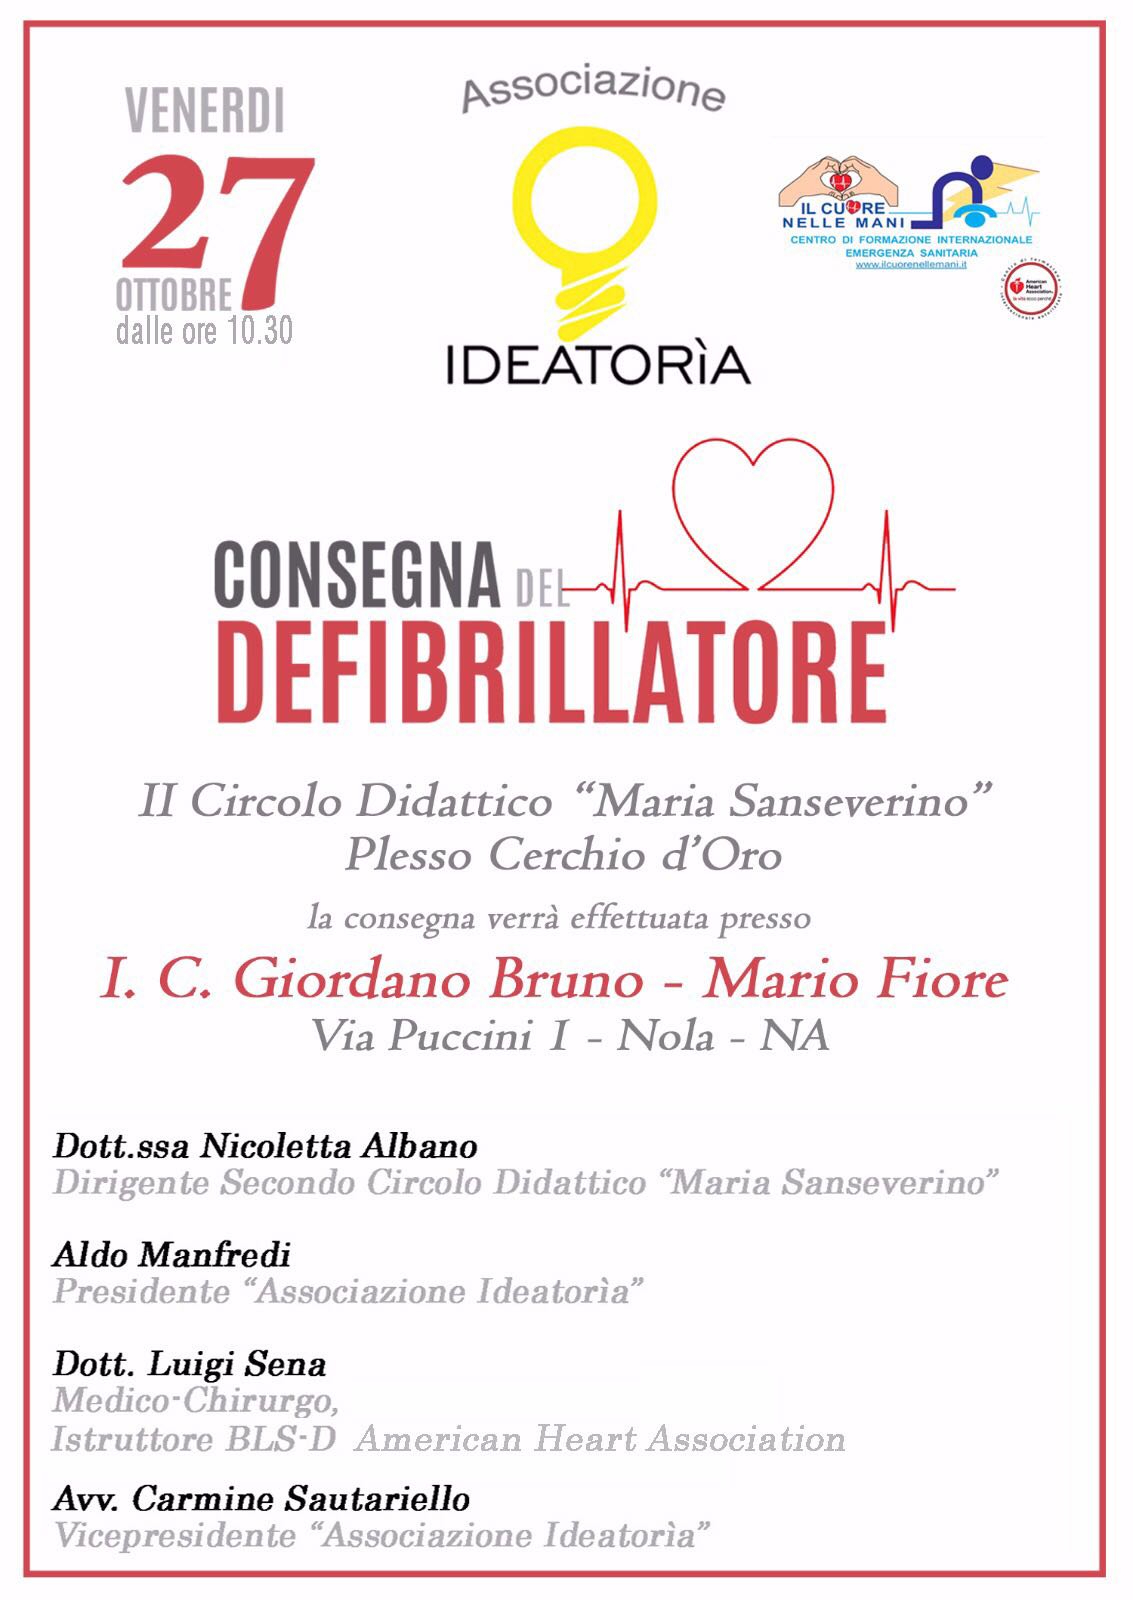 Nola: l’Associazione Ideatorìa consegnerà il primo defibrillatore al circolo didattico Maria Sanseverino